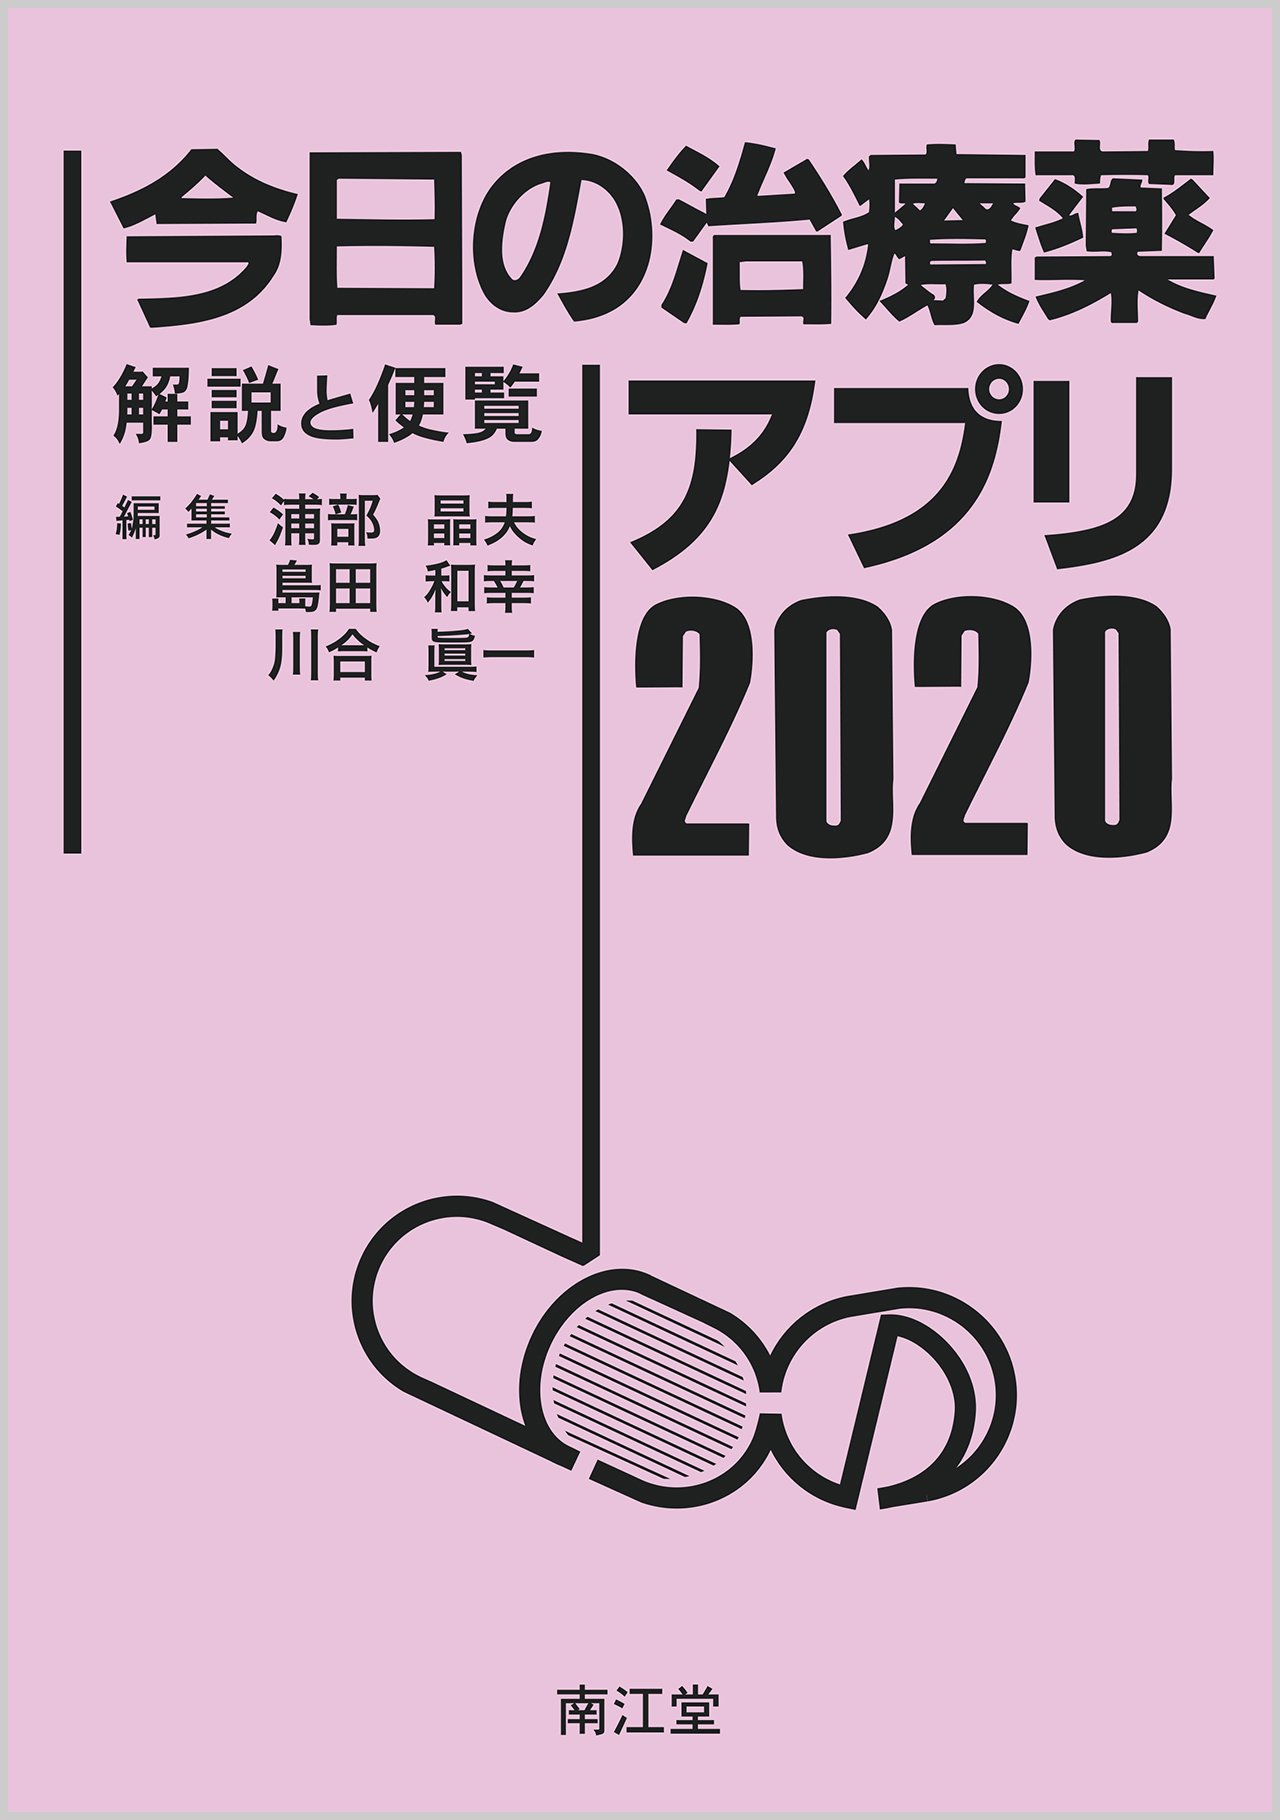 2021 薬価 サーチ